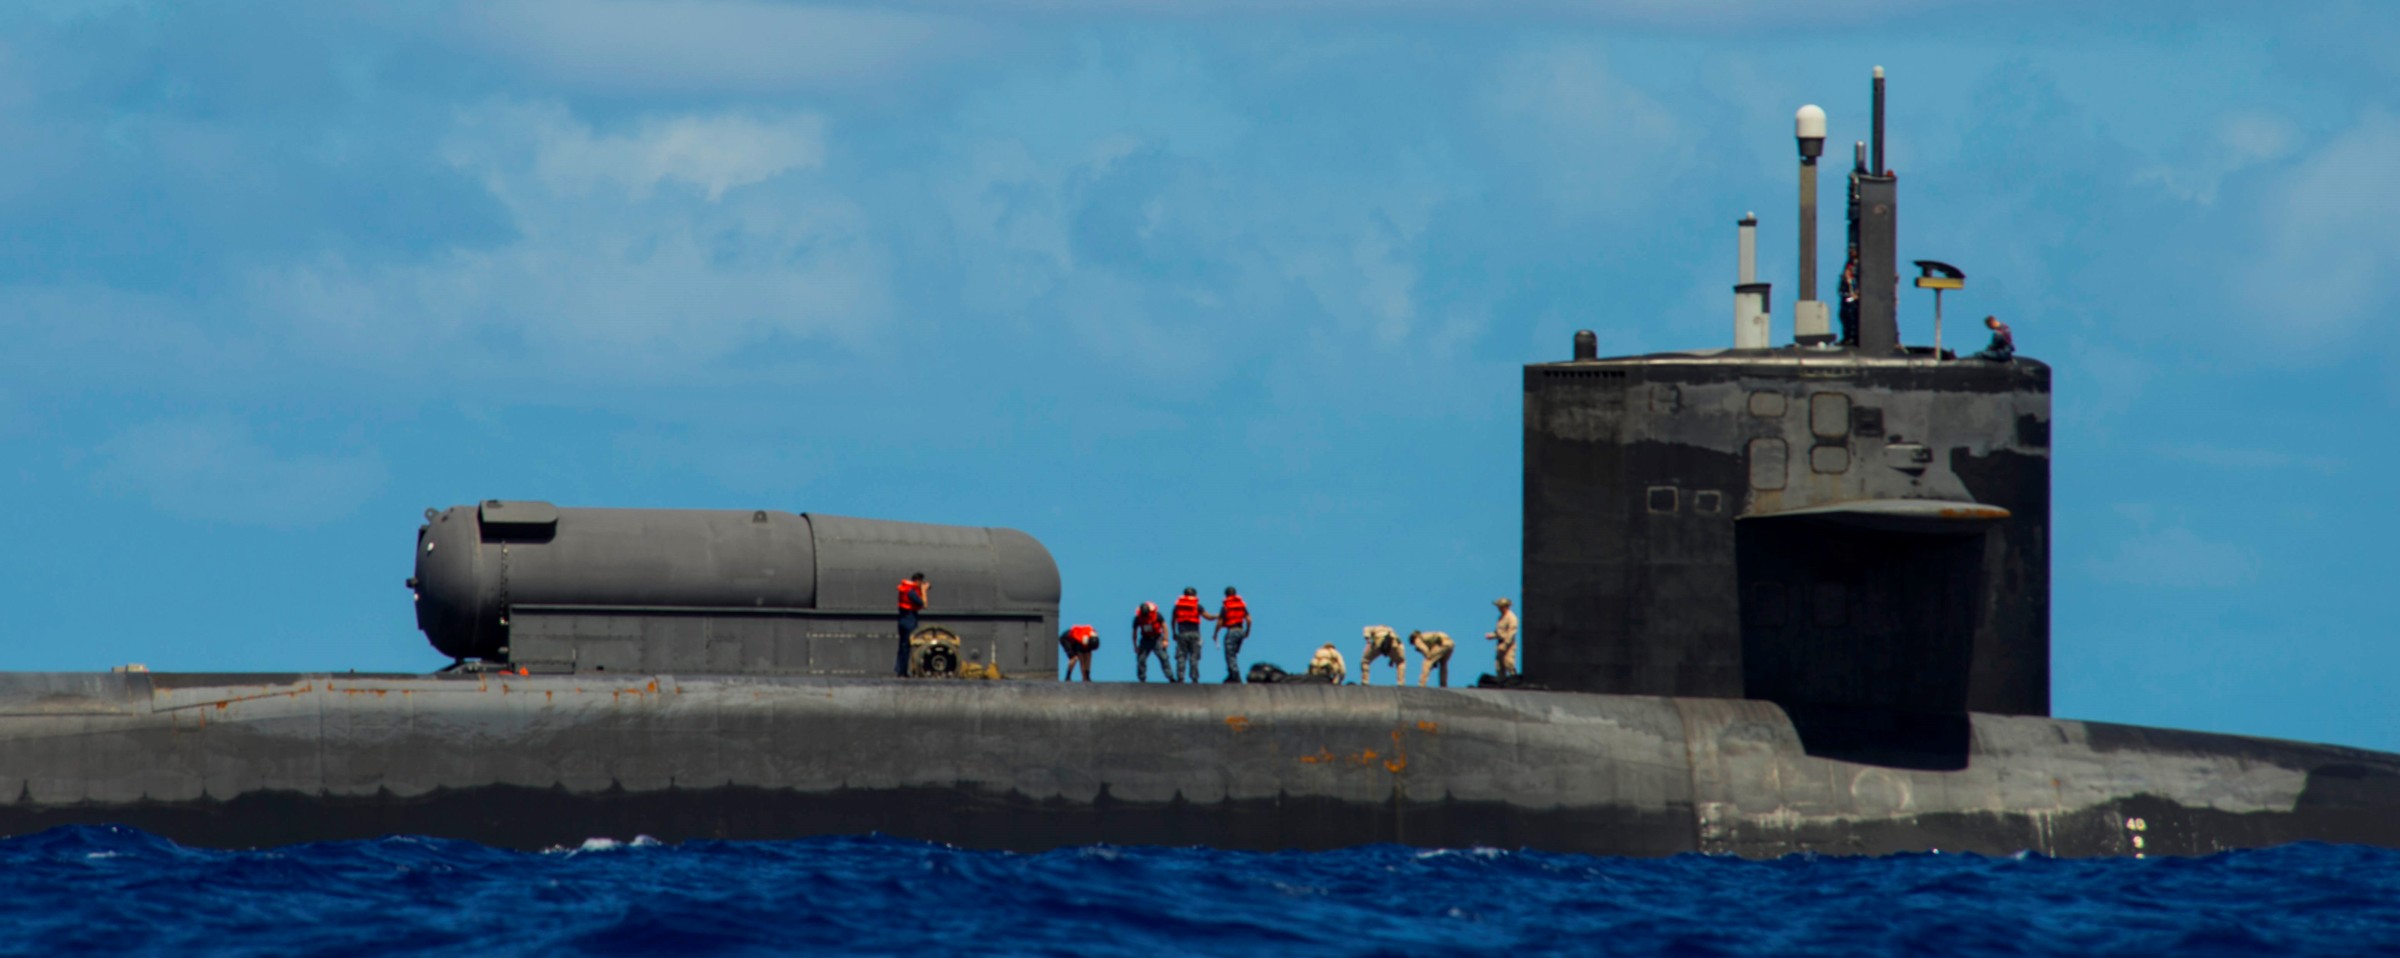 ssgn-727 uss michigan guided missile submarine 2015 09 apra harbor guam